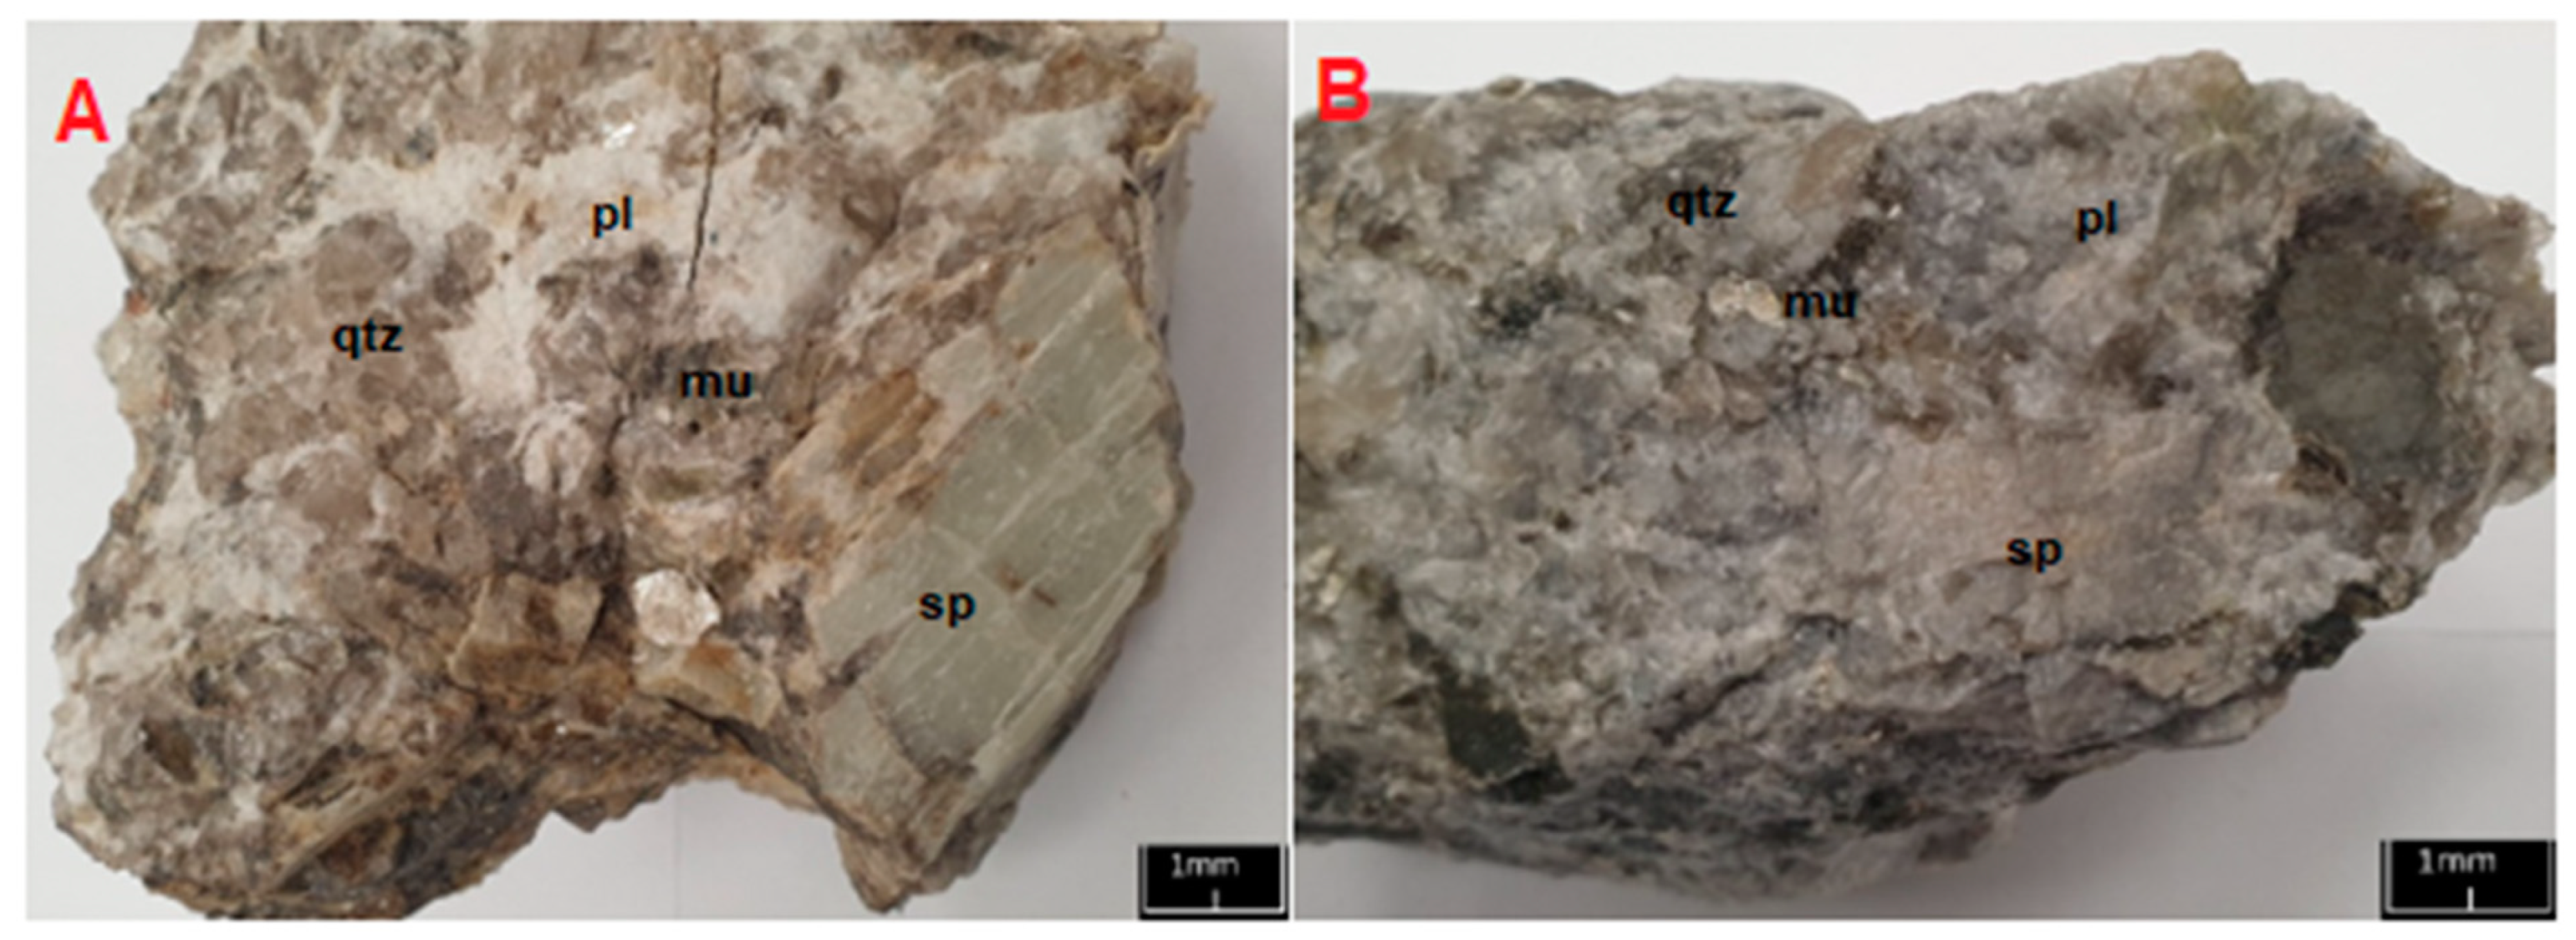 Tantalite-(Fe) with Cassiterite, Albite and Muscovite - RARE15-115